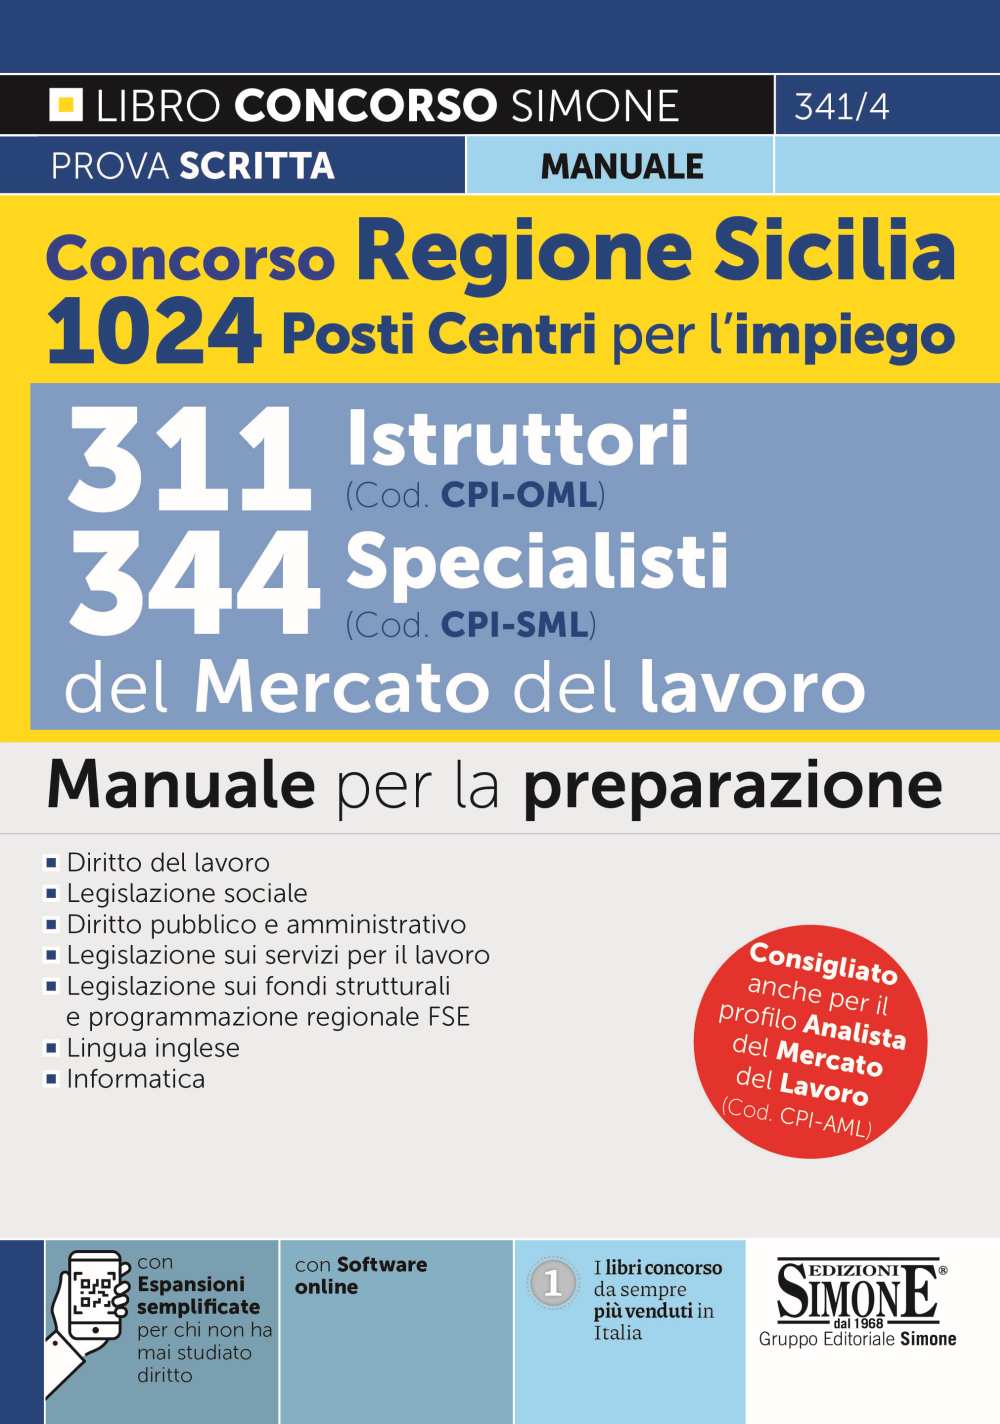 Concorso Regione Sicilia 1024 posti Centri per l'impiego - 311 Istruttori (Cod. CPI-OML) e 344 Specialisti (Cod. CPI-SML) del Mercato del Lavoro - Manuale - 341/4